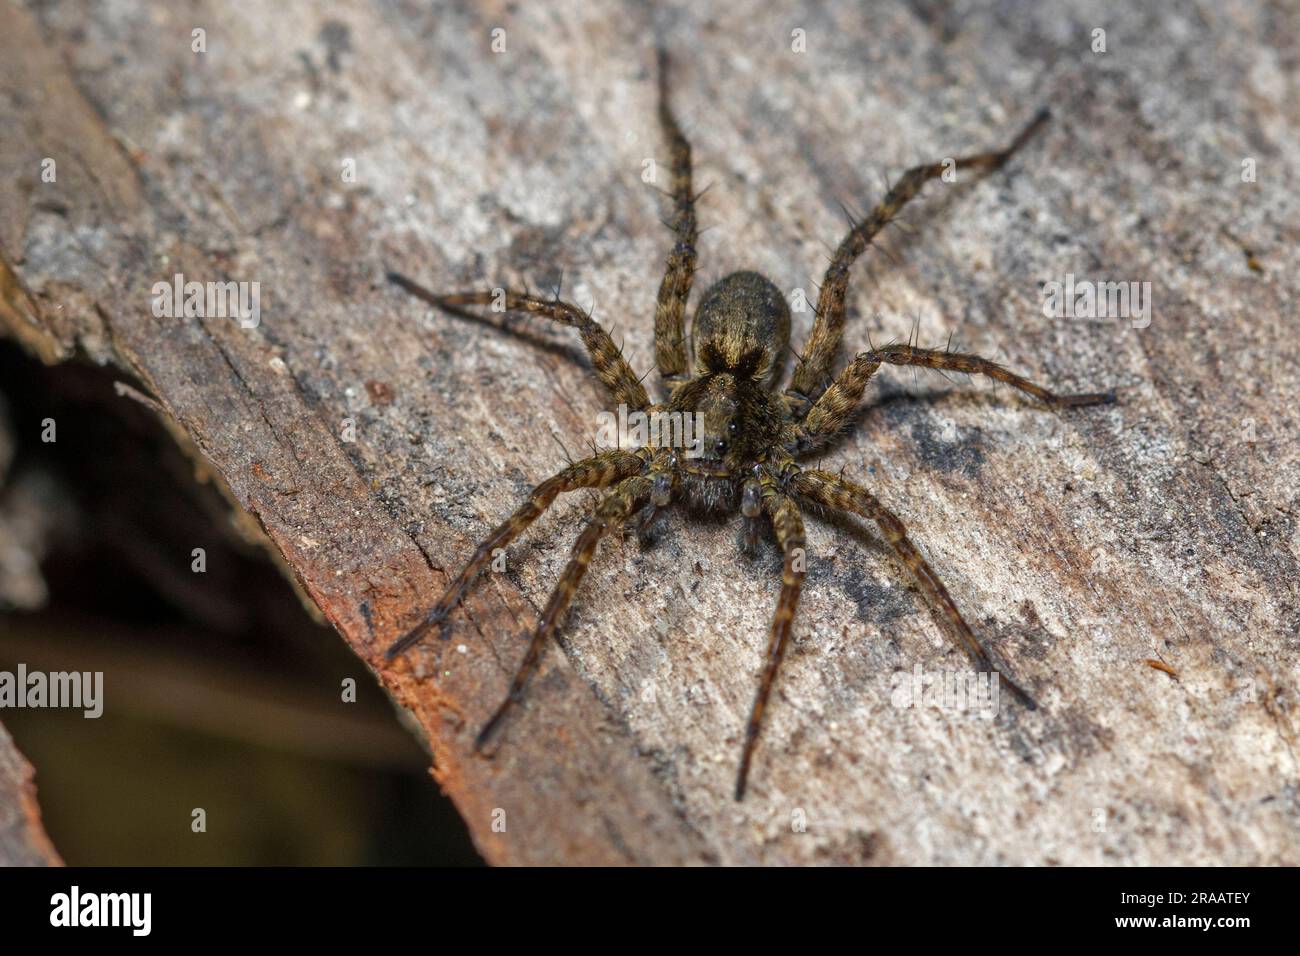 spider in the garden Stock Photo